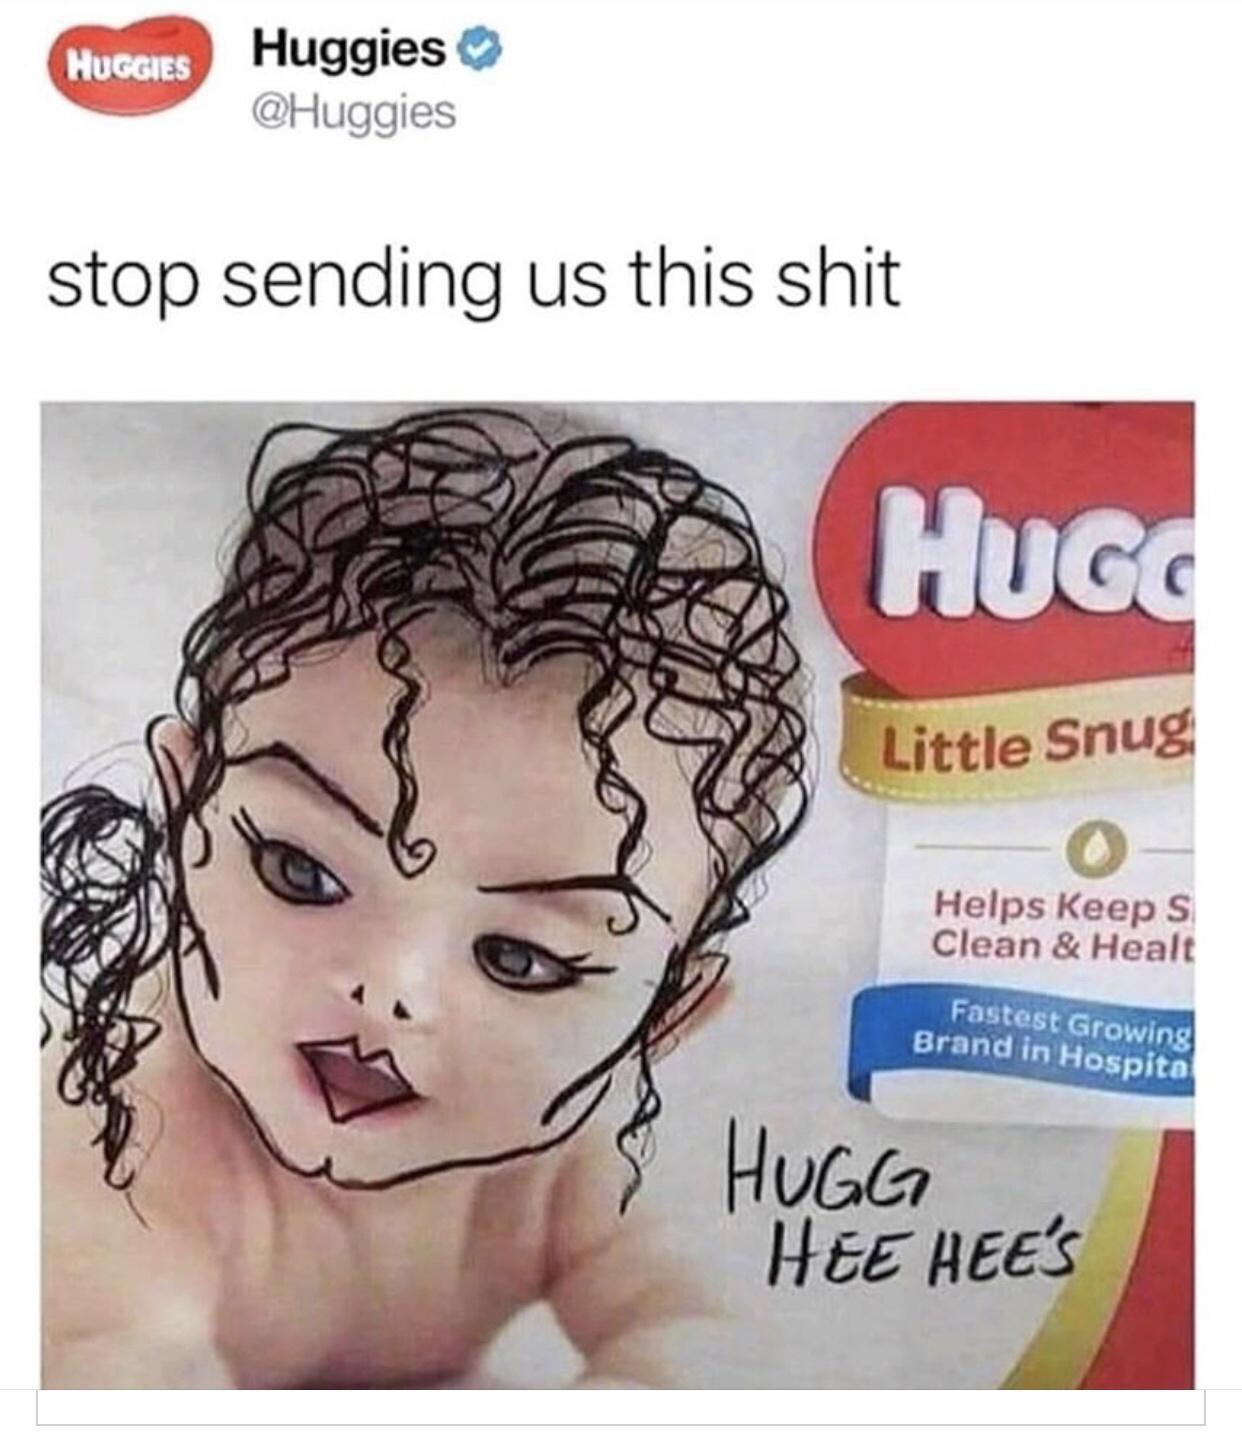 hug hee hees - Huggies Huggies stop sending us this shit Hugo Little Snug Helps keeps Clean & Healt Fastest Growing Brand in Hospito Hugg Hee Hee'S